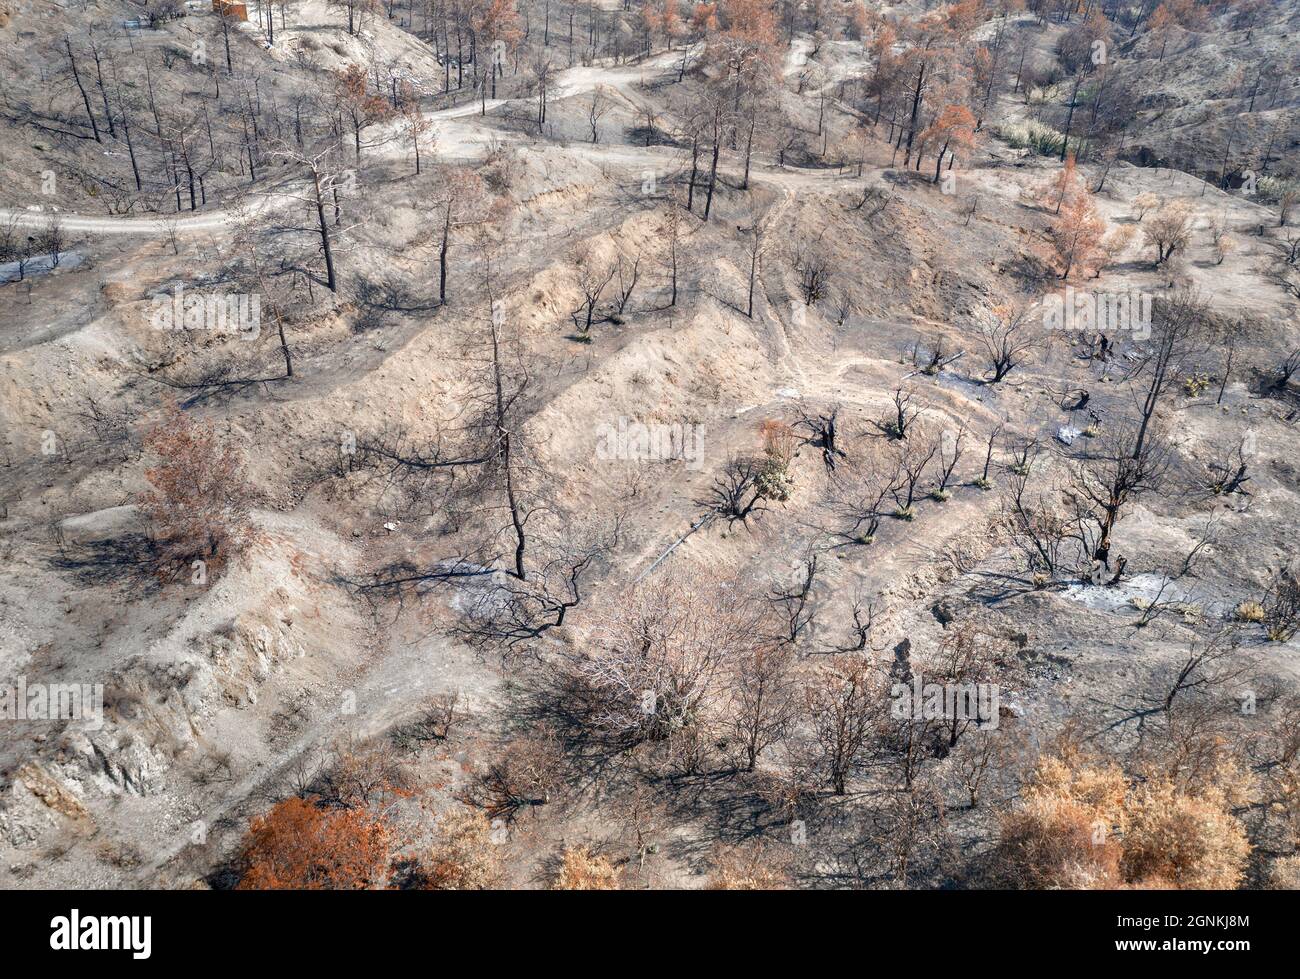 Obstgarten durch einen Waldbrand zerstört. Ländliche Gegend, Luftlandschaft mit verbrannten und getrockneten Bäumen Stockfoto